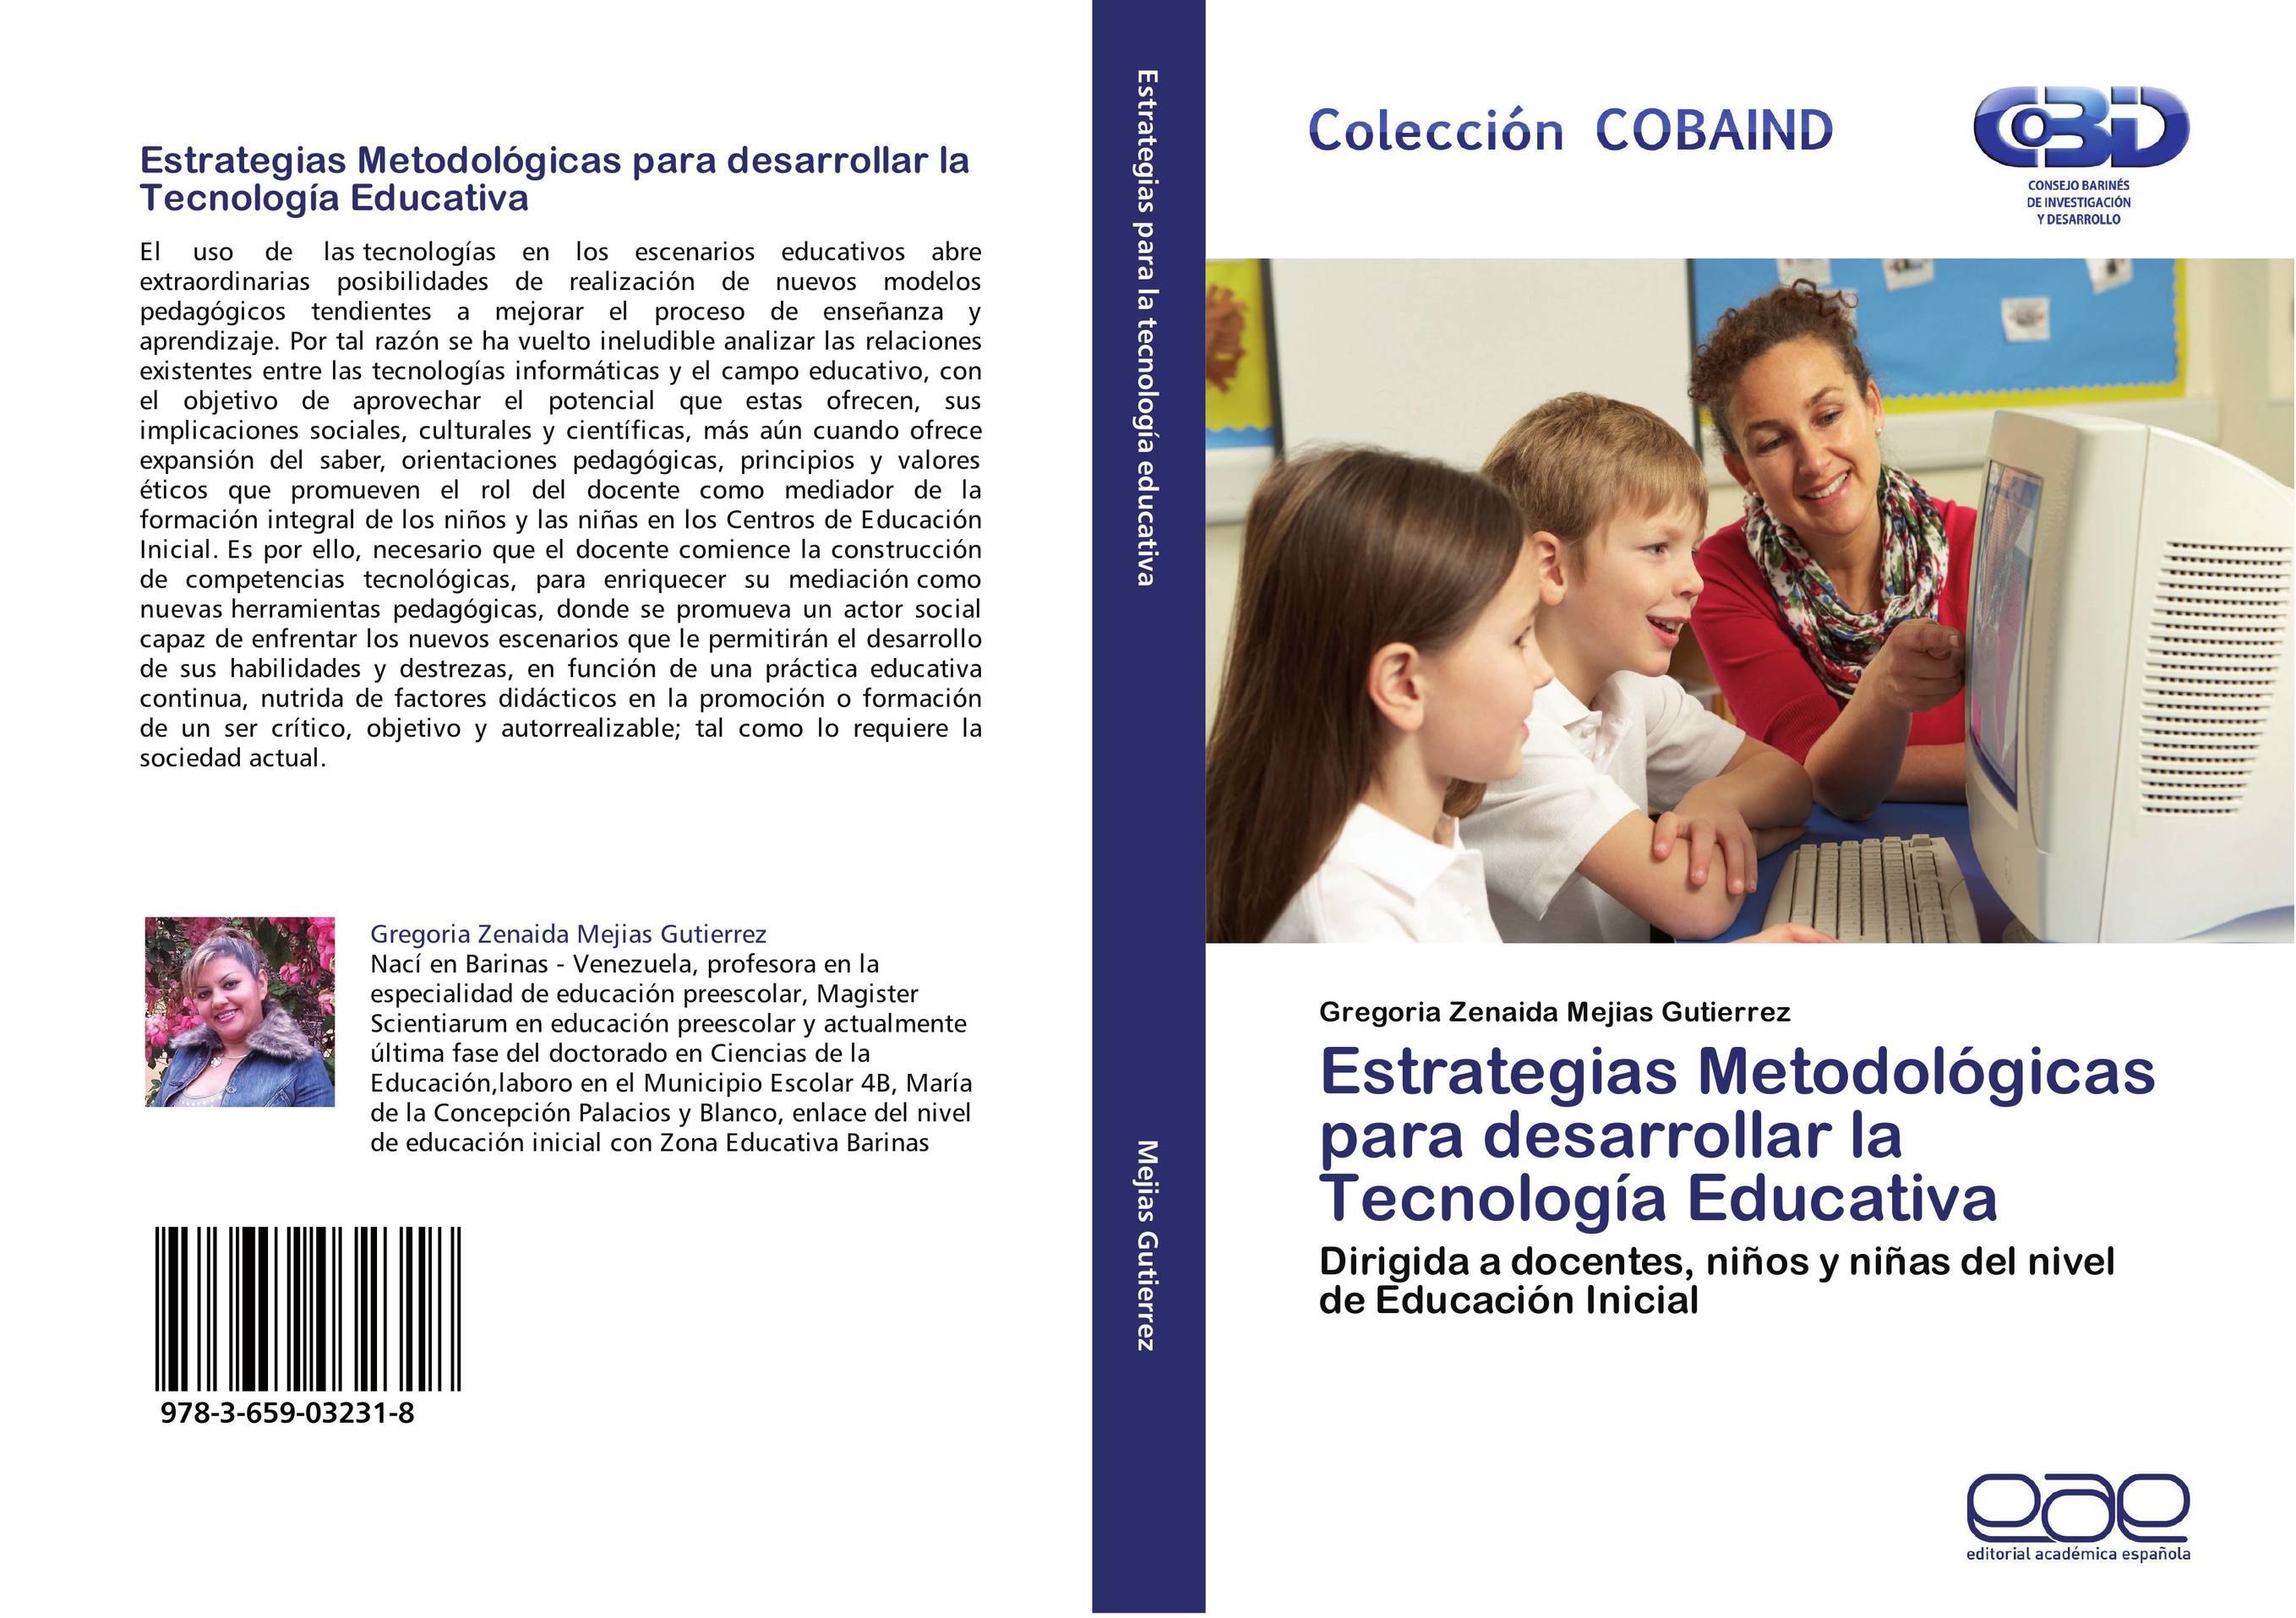 Estrategias Metodológicas para desarrollar la Tecnología Educativa